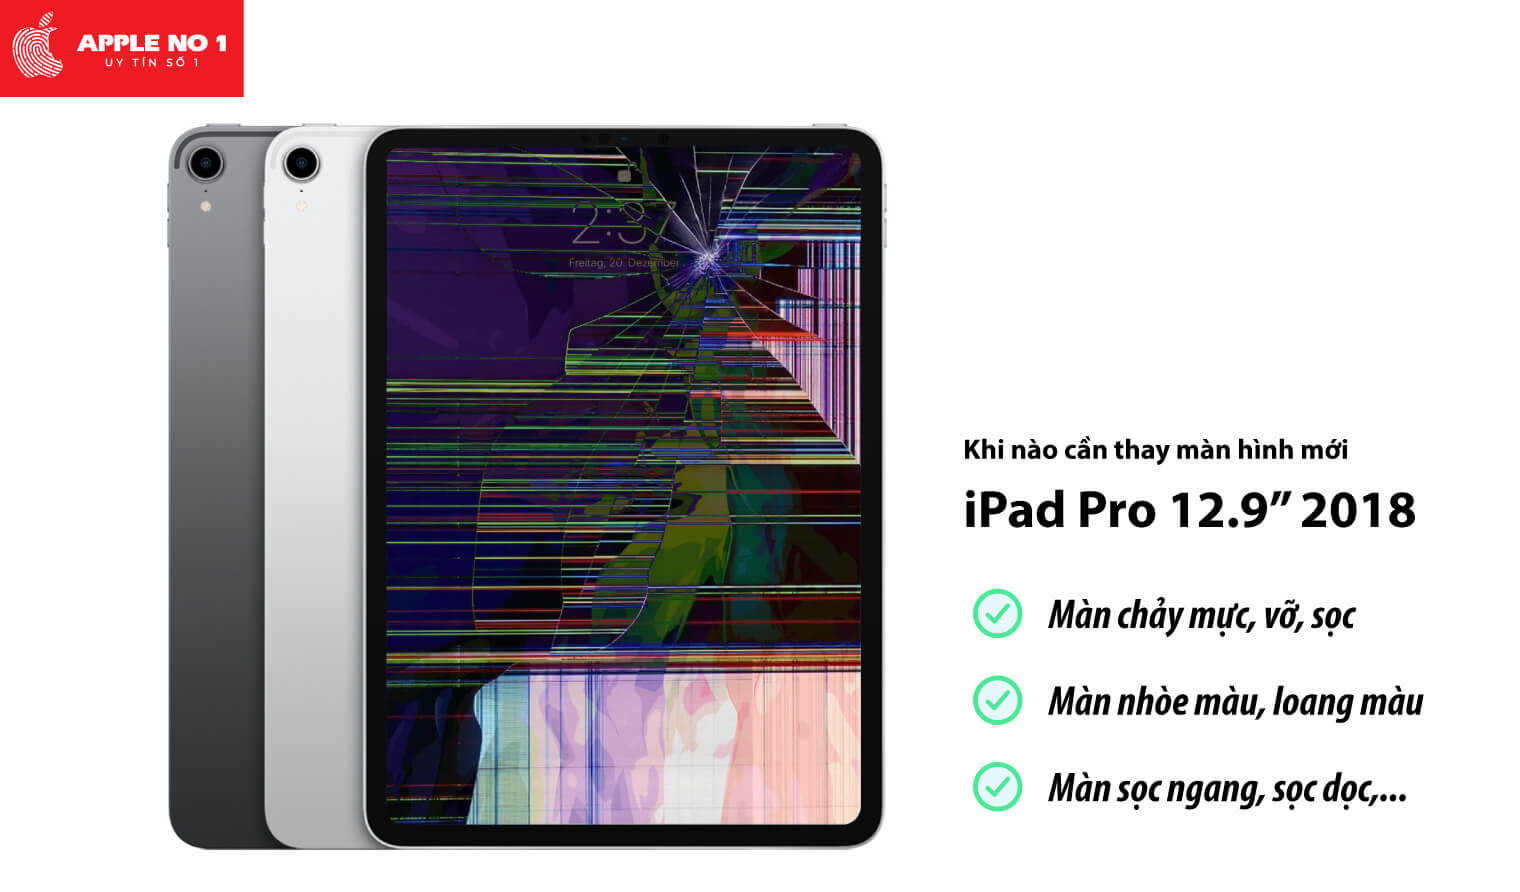 Thay màn hình iPad Pro 12.9 inch 2018 khi nào?